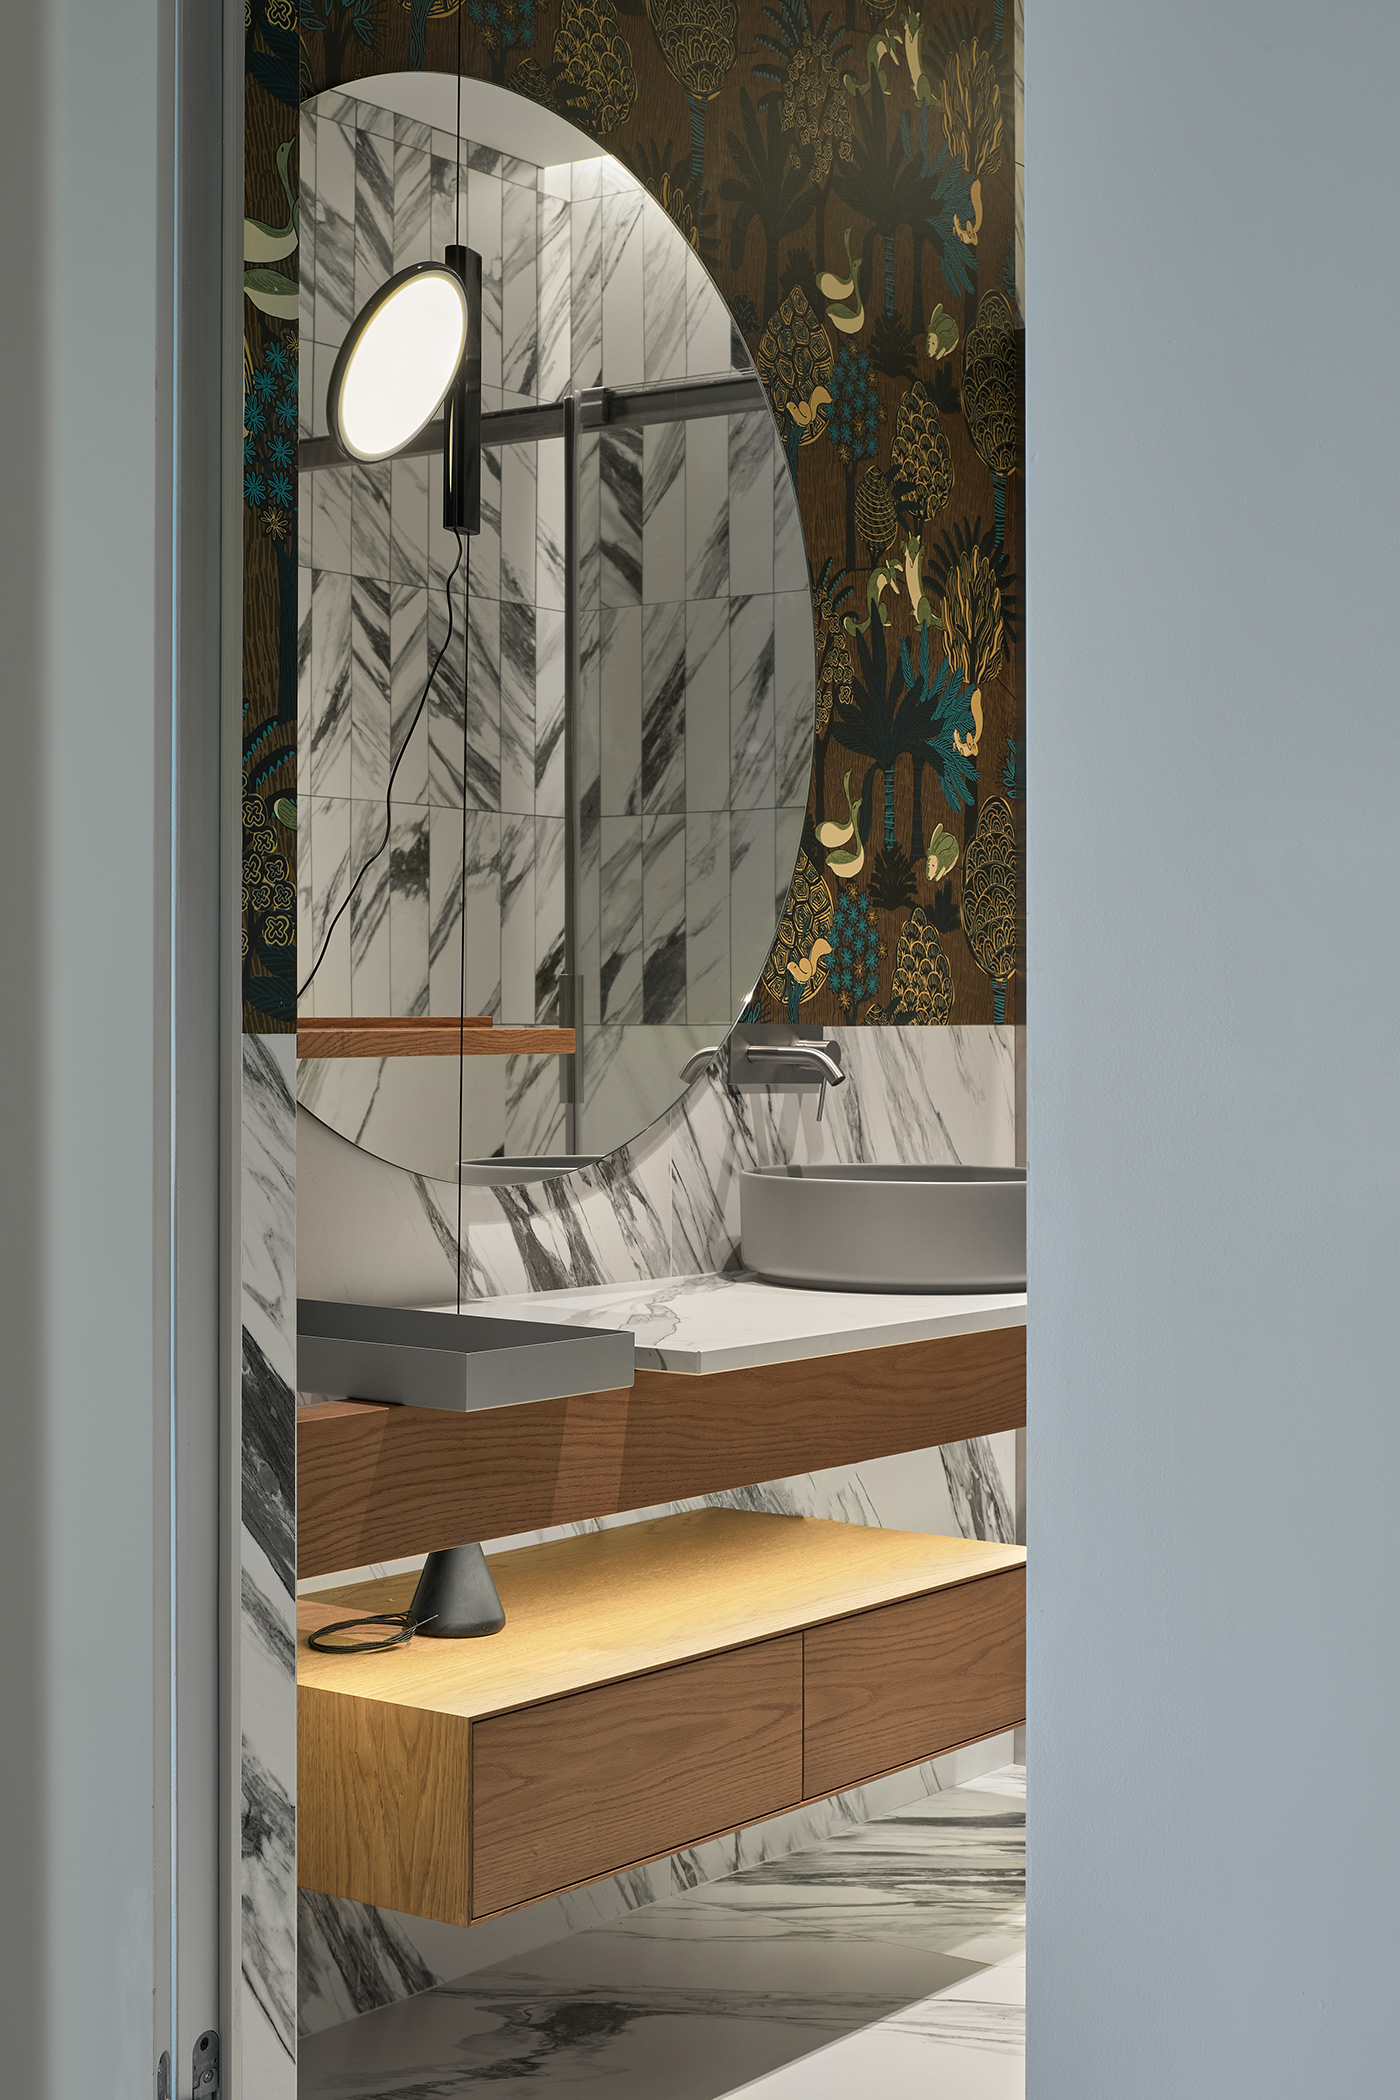 ILYAHEY interior design  Saint Petersburg гостиная   дизайн интерьера интерьер камин квартира санкт-петербург